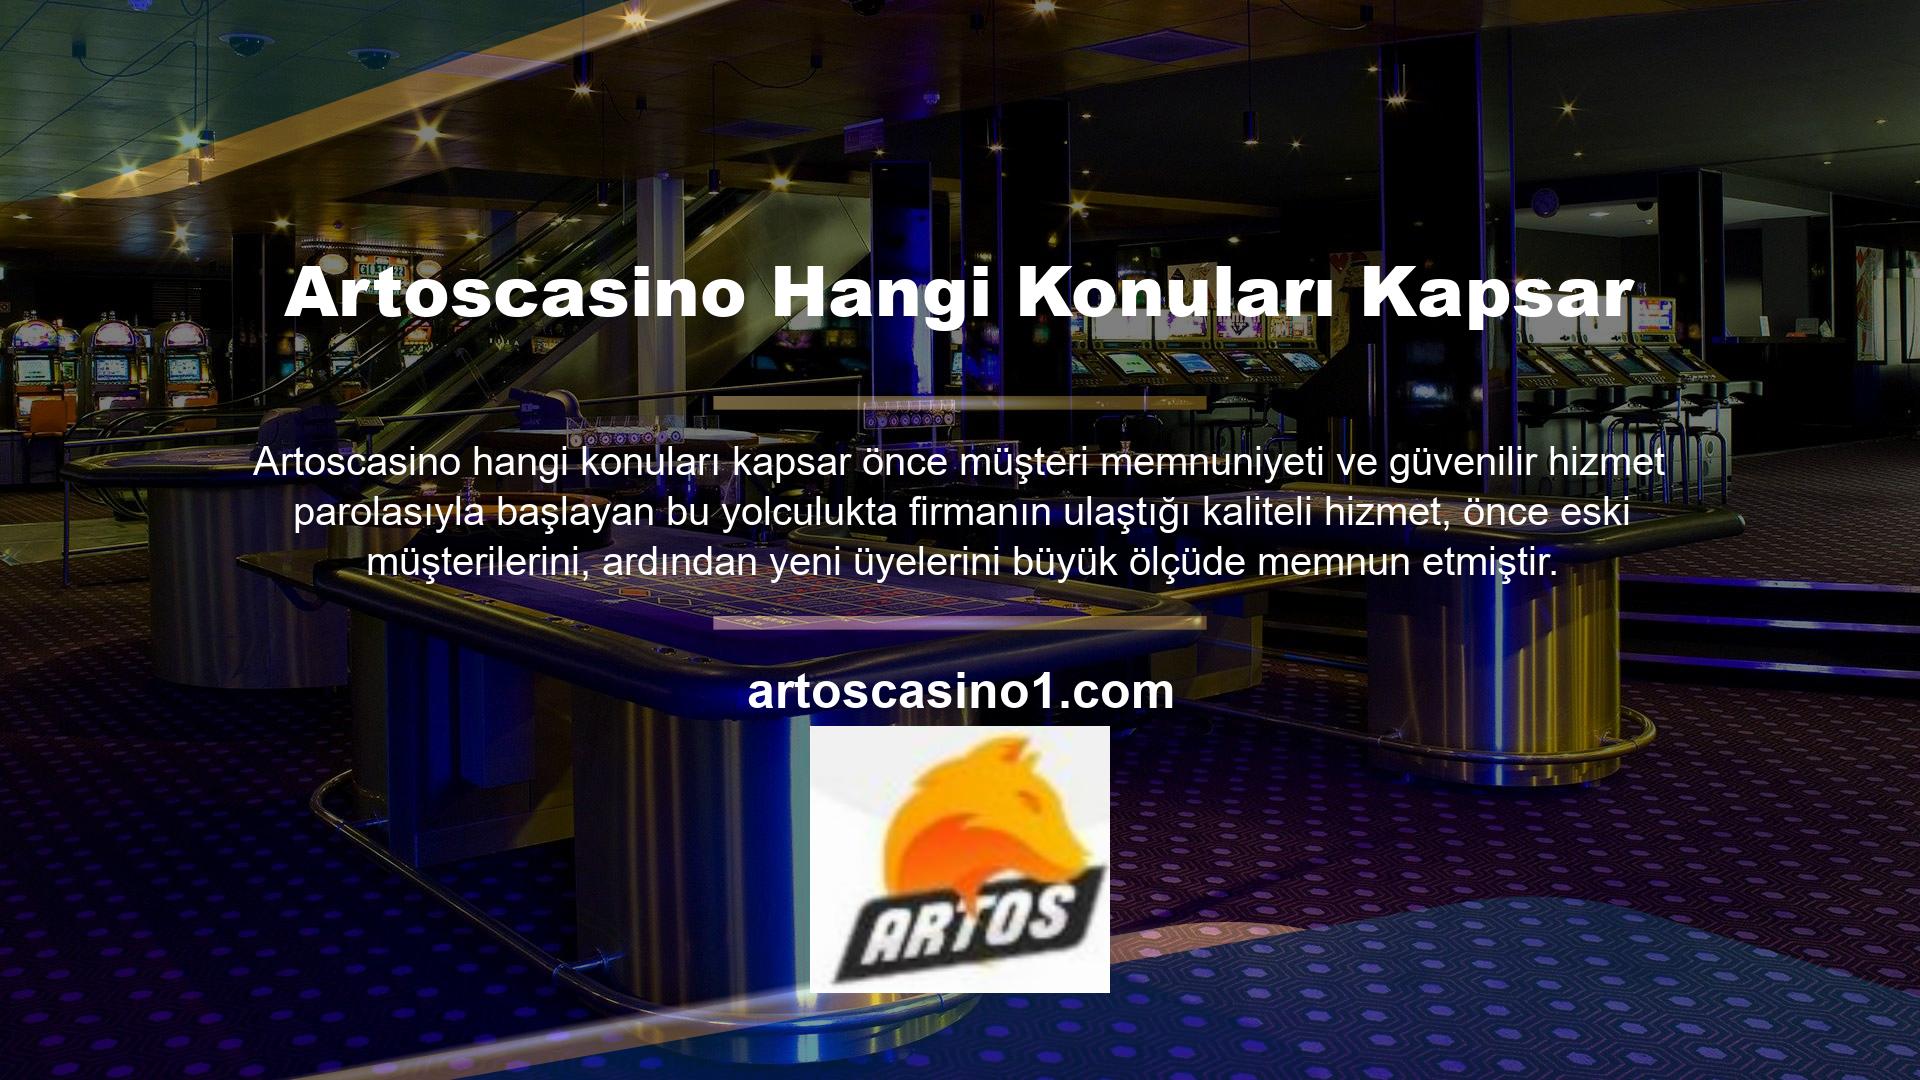 Artoscasino dışında yatırım yapan oyuncular, Artoscasino en iyi bahis oranlarını, en eğlenceli slot makinelerini, en kaliteli ve en karlı casino oyunlarını ve bir casino sitesinden bekleyeceğiniz tüm istisnaları bulacaklardır